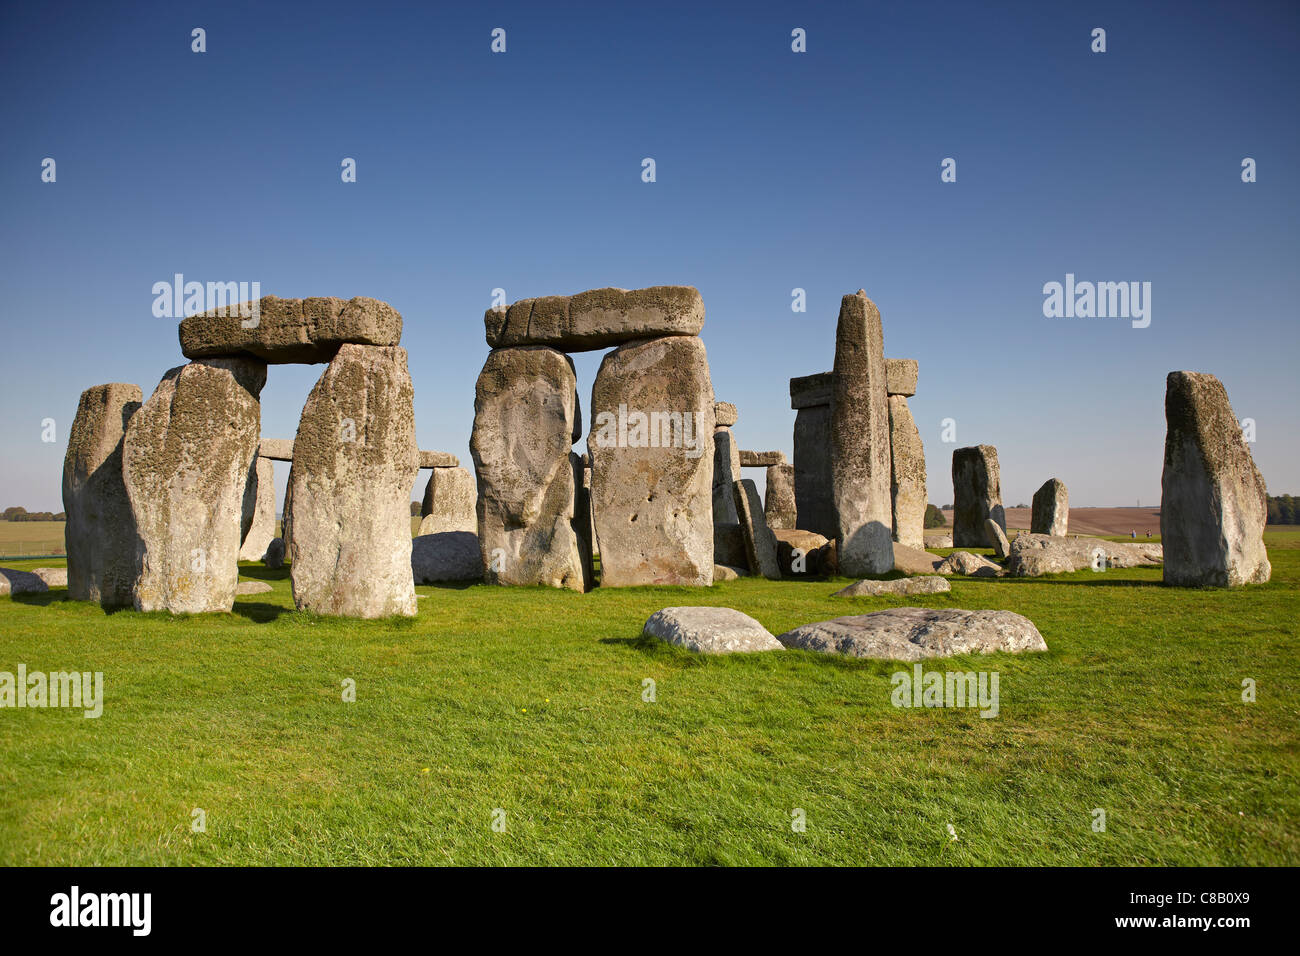 Stonehenge, Amesbury, Wiltshire, England, UK Stock Photo